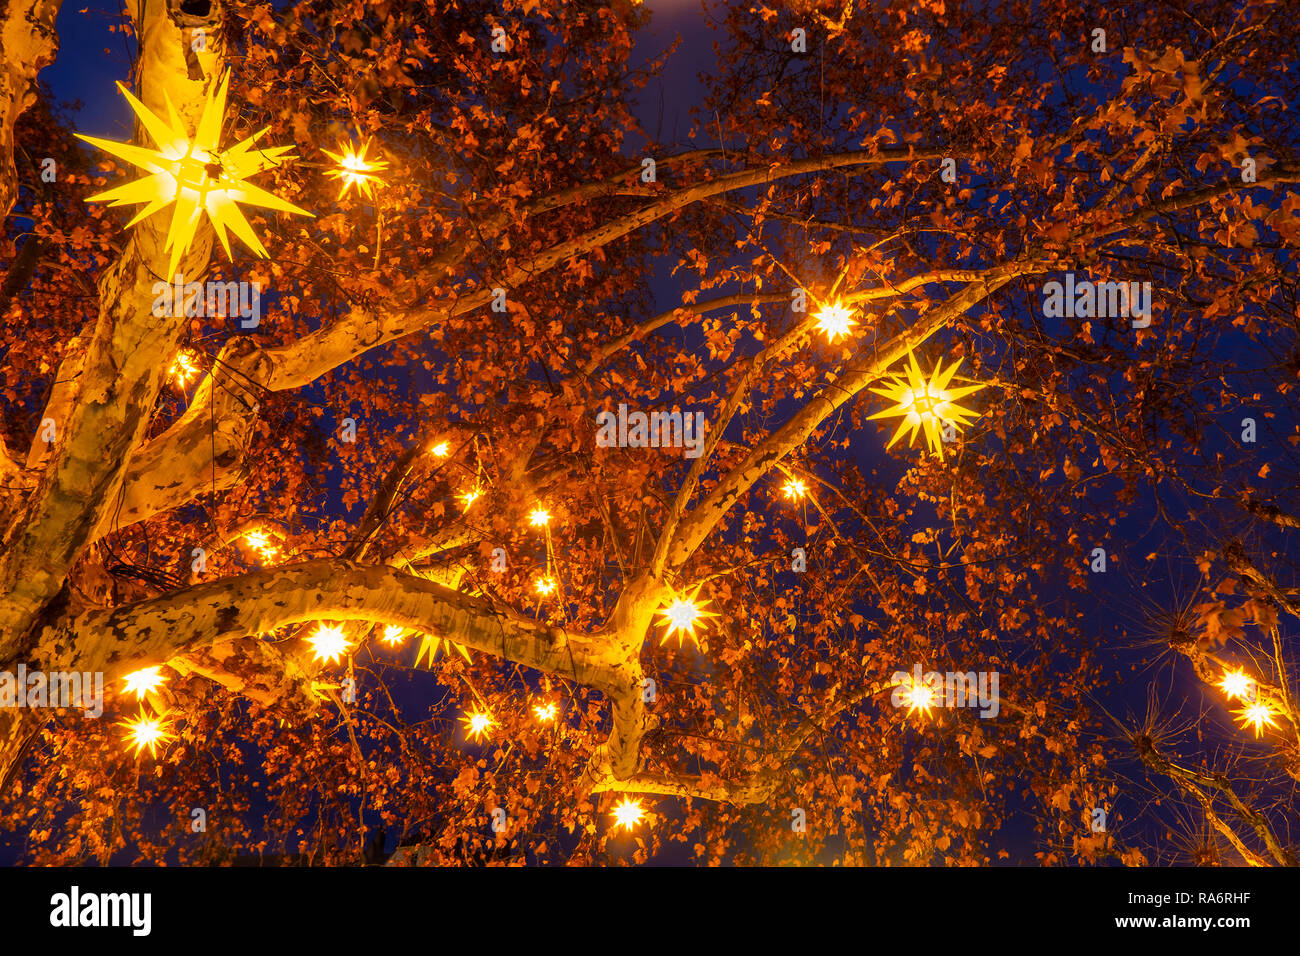 Lumières de Noël en forme d'étoile suspendue dans un arbre dans la nuit. Arrière-plan de vacances de Noël ou de toile de fond. Strasbourg, France. Banque D'Images